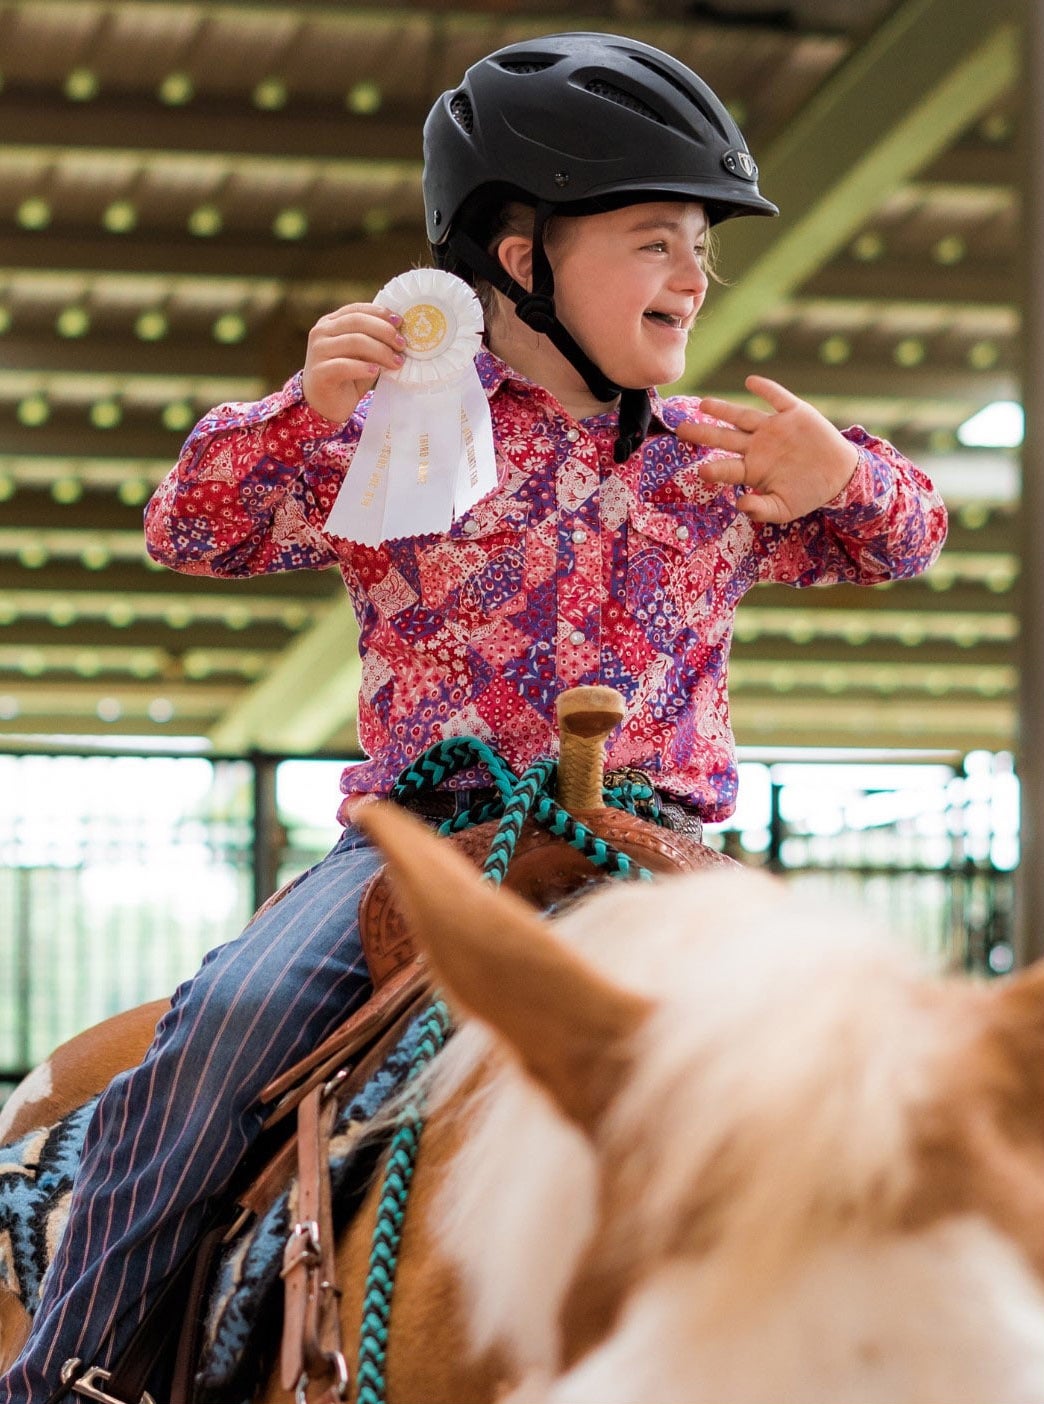 Girl on horseback wins ribbon